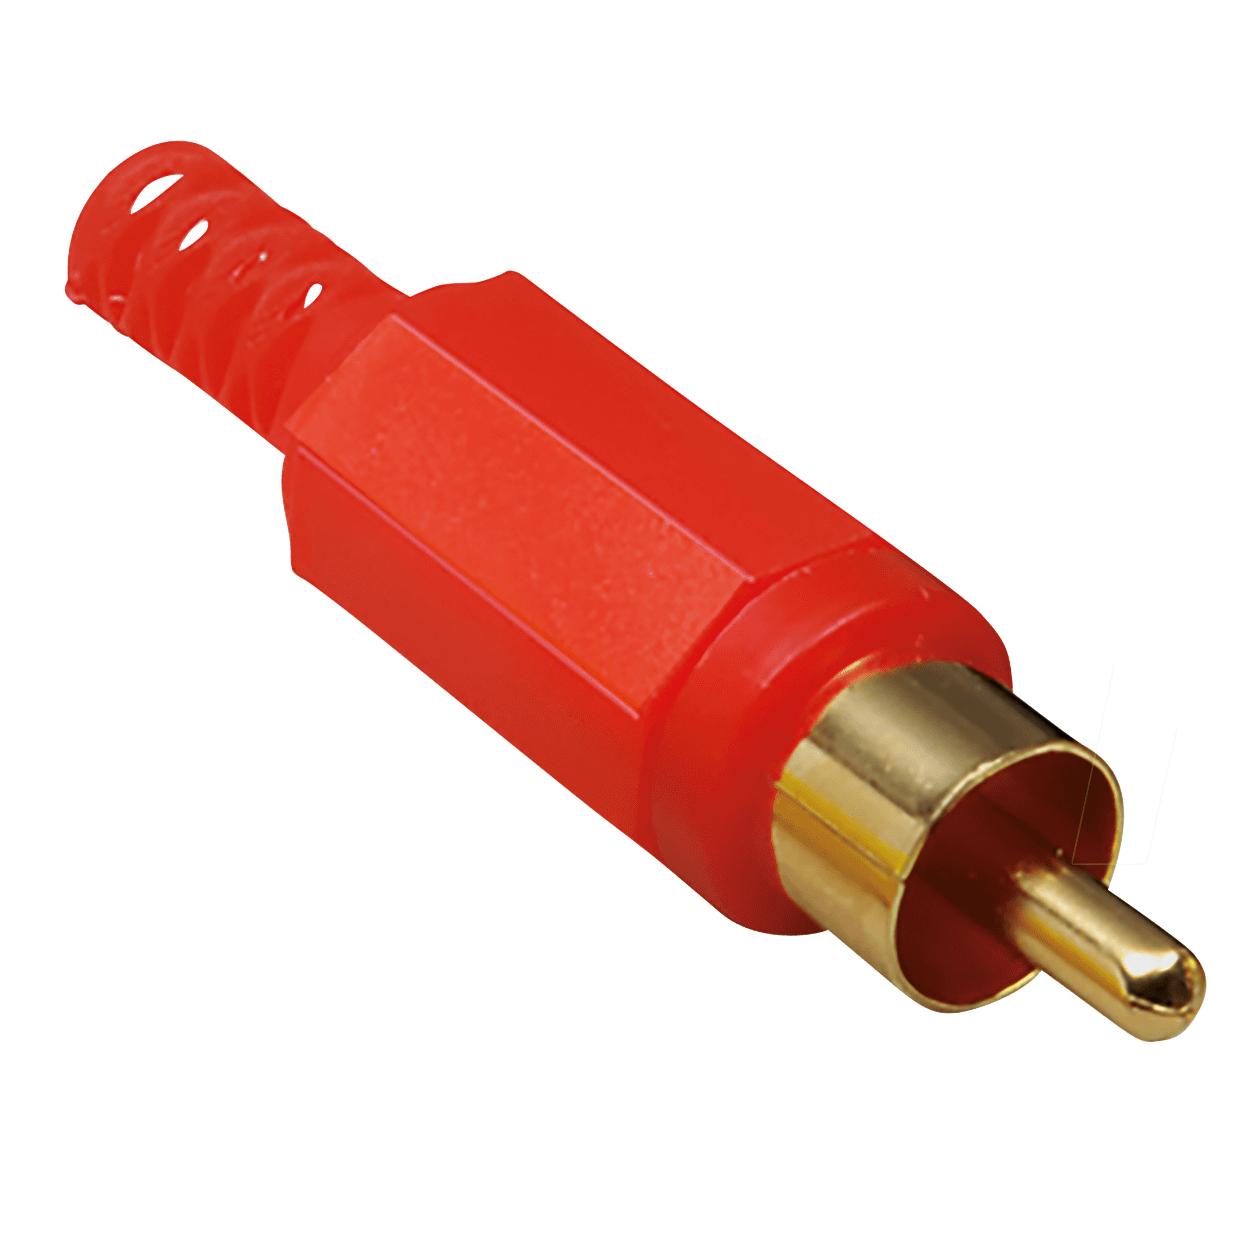 разъем RCA вилка/папа на кабель, позолоченные контакты, корпус пластик, защита кабеля, цвет красный